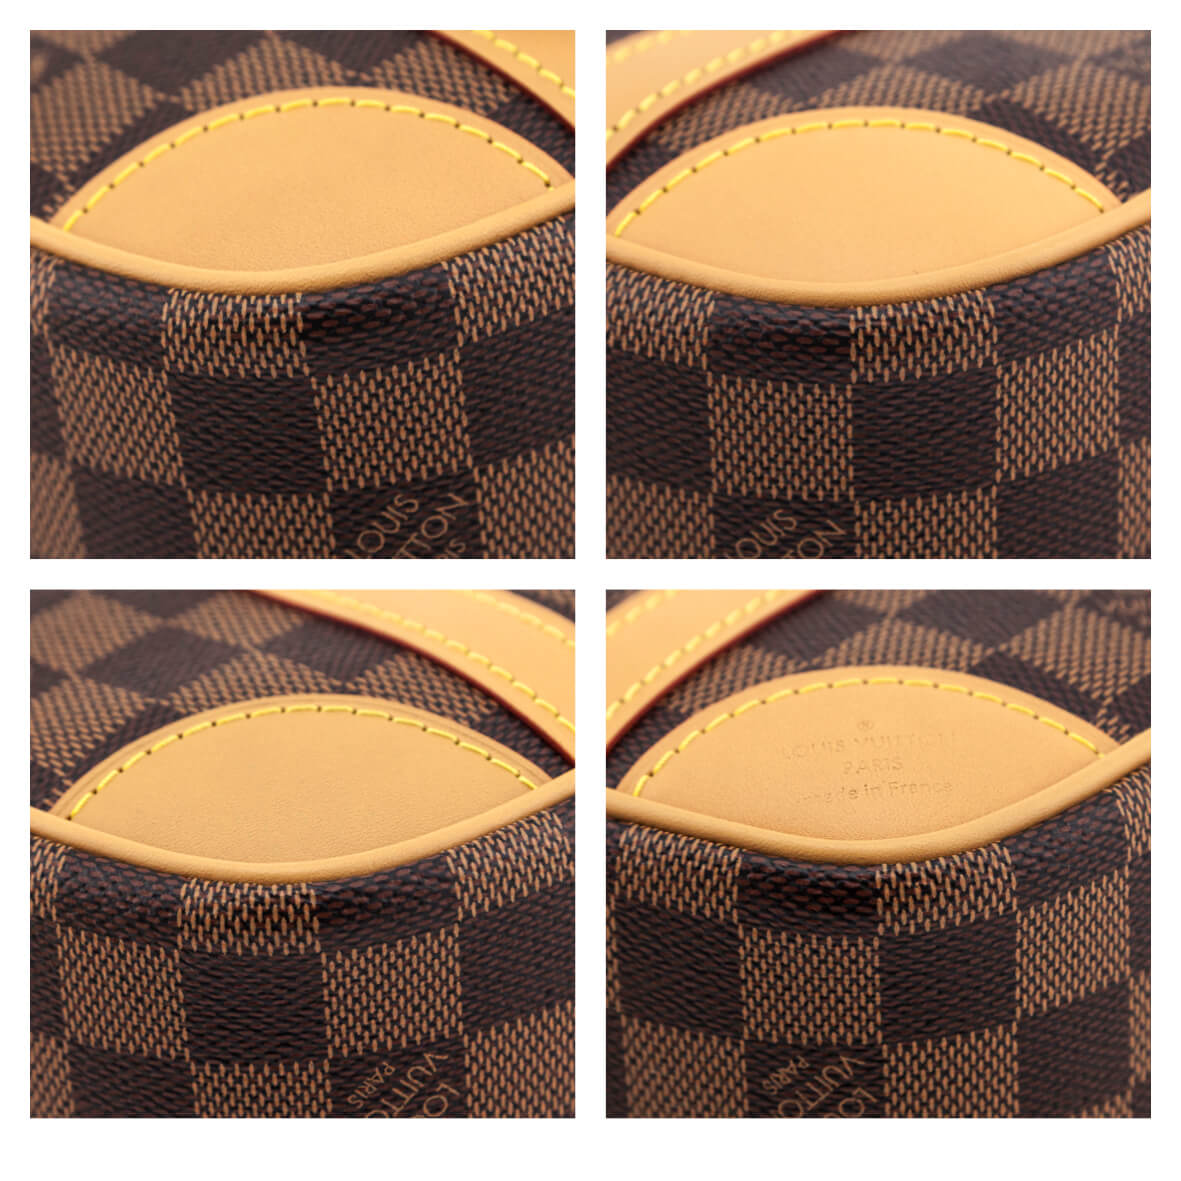 Louis Vuitton Valisette Souple Handbag Damier BB Brown 230485290